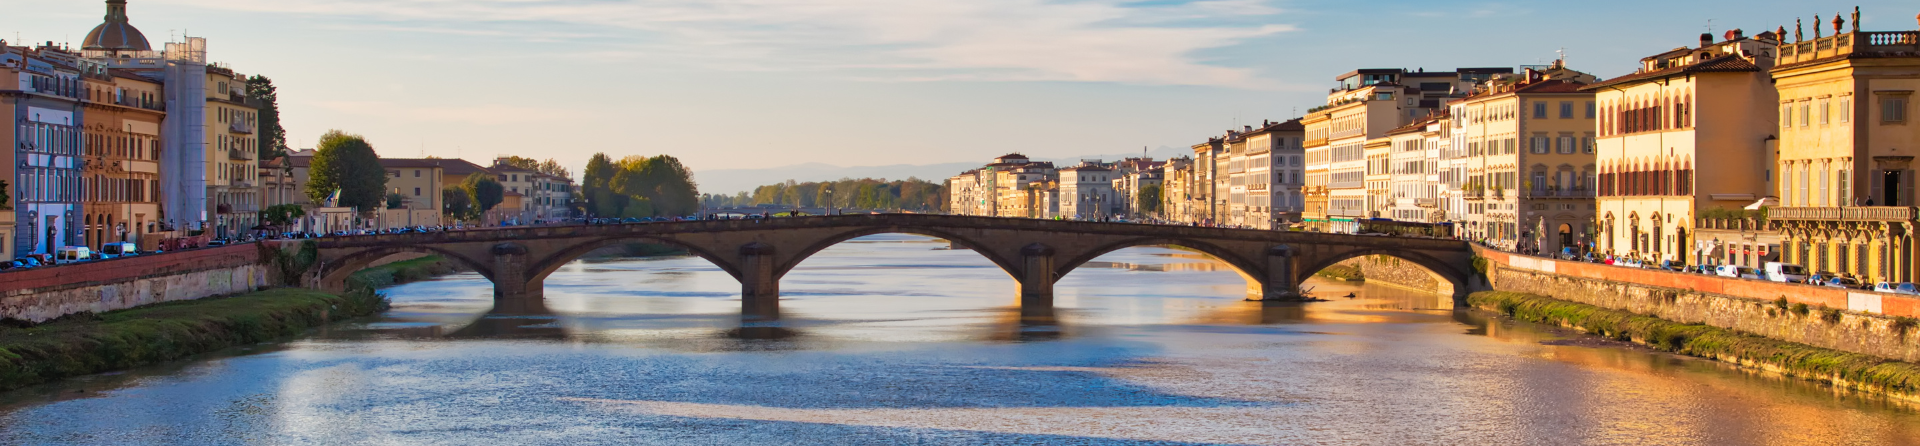 Famous bridges in Florence